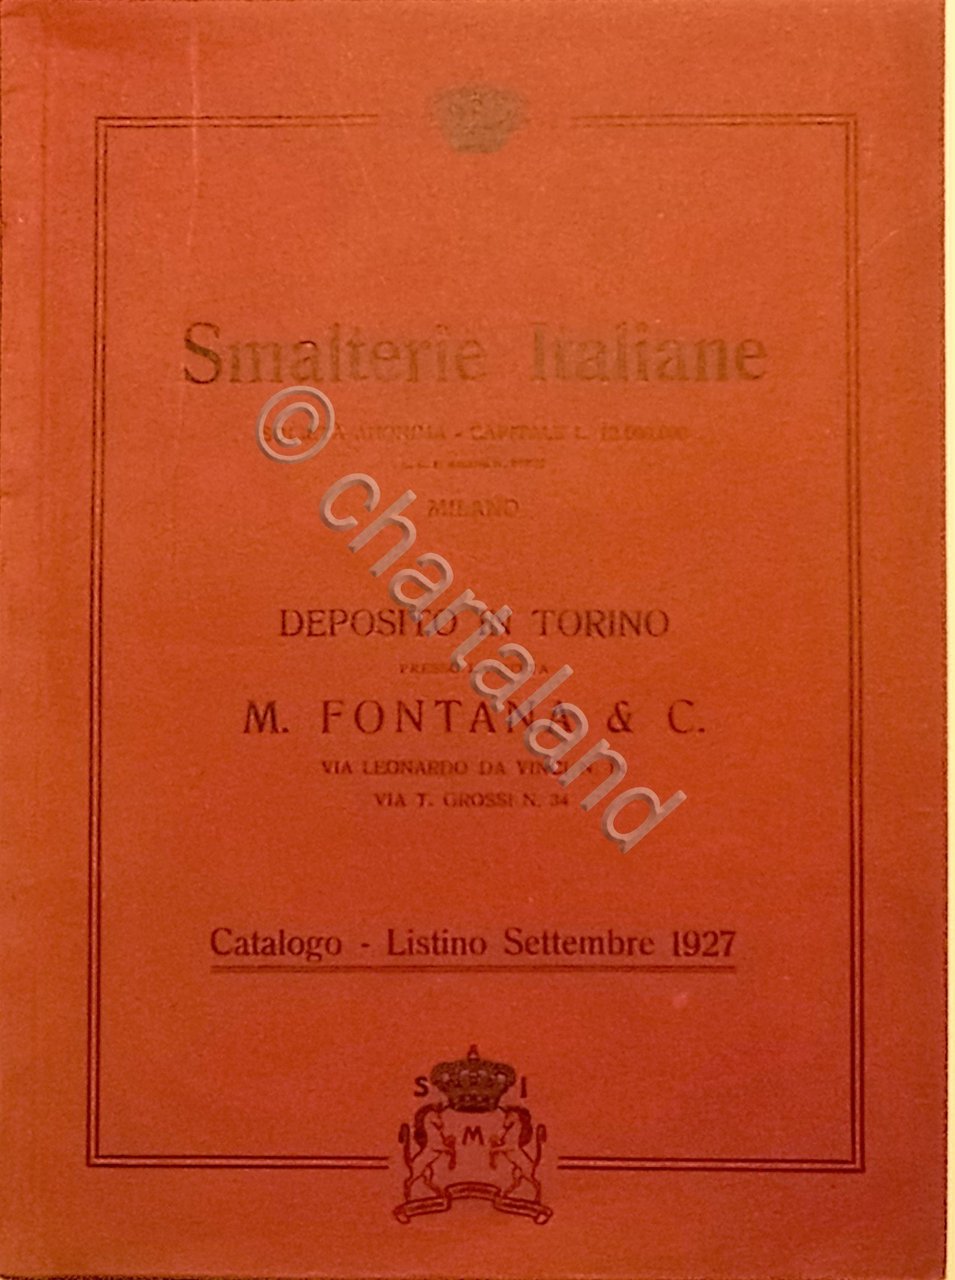 Catalogo Smalterie Italiane - Deposito in Torino presso M. Fontana …